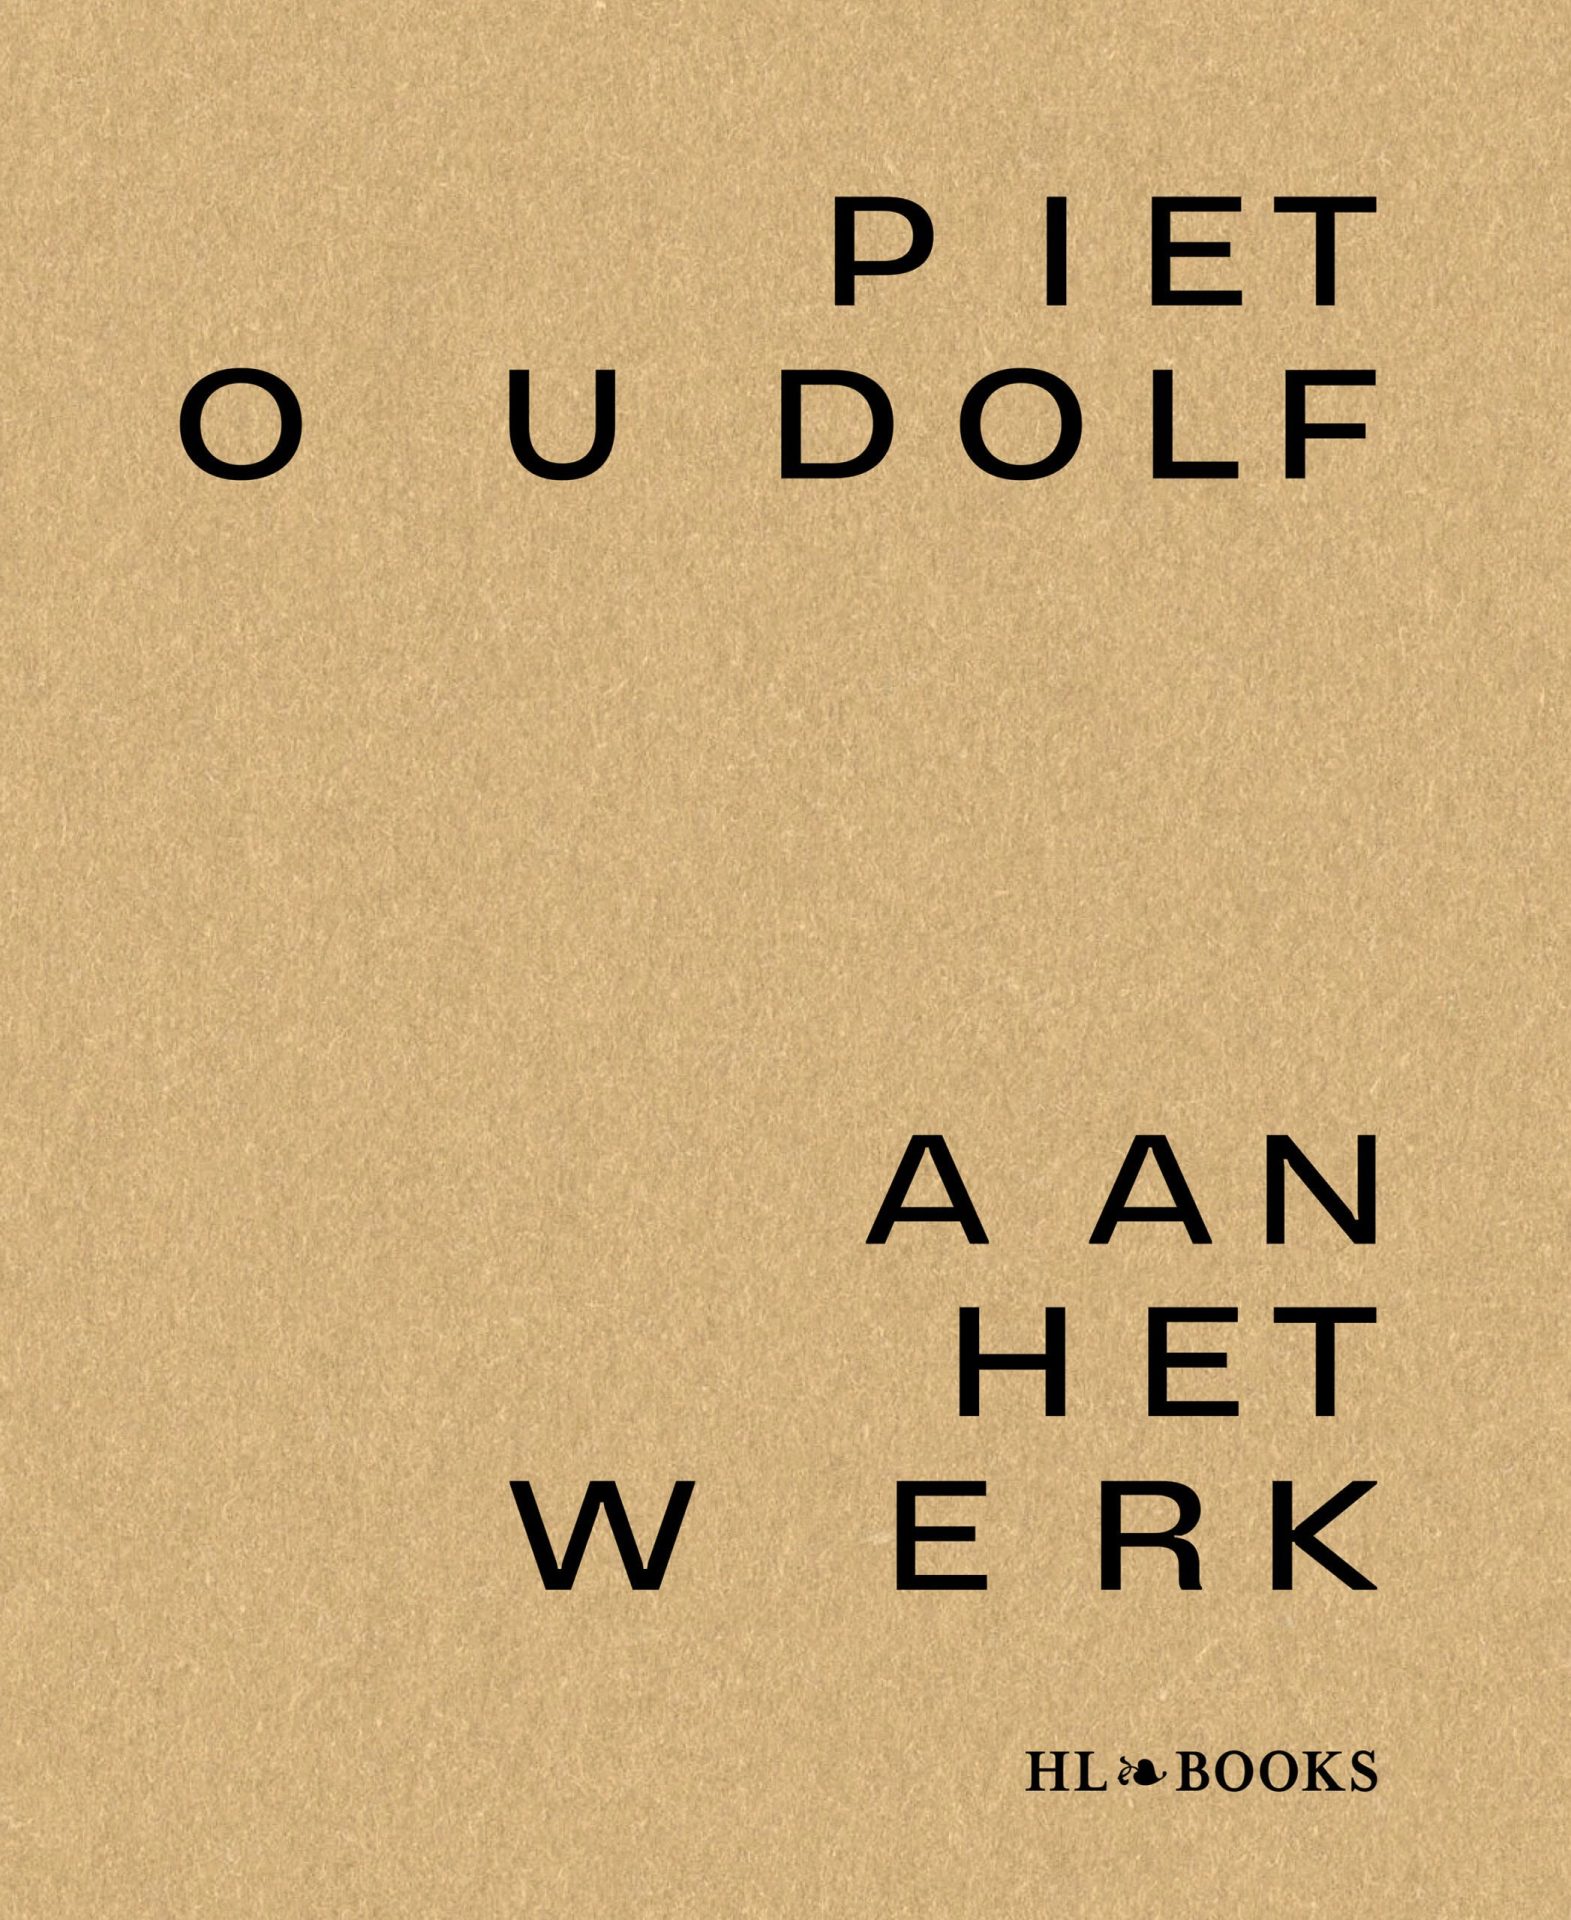 Piet Oudolf at work